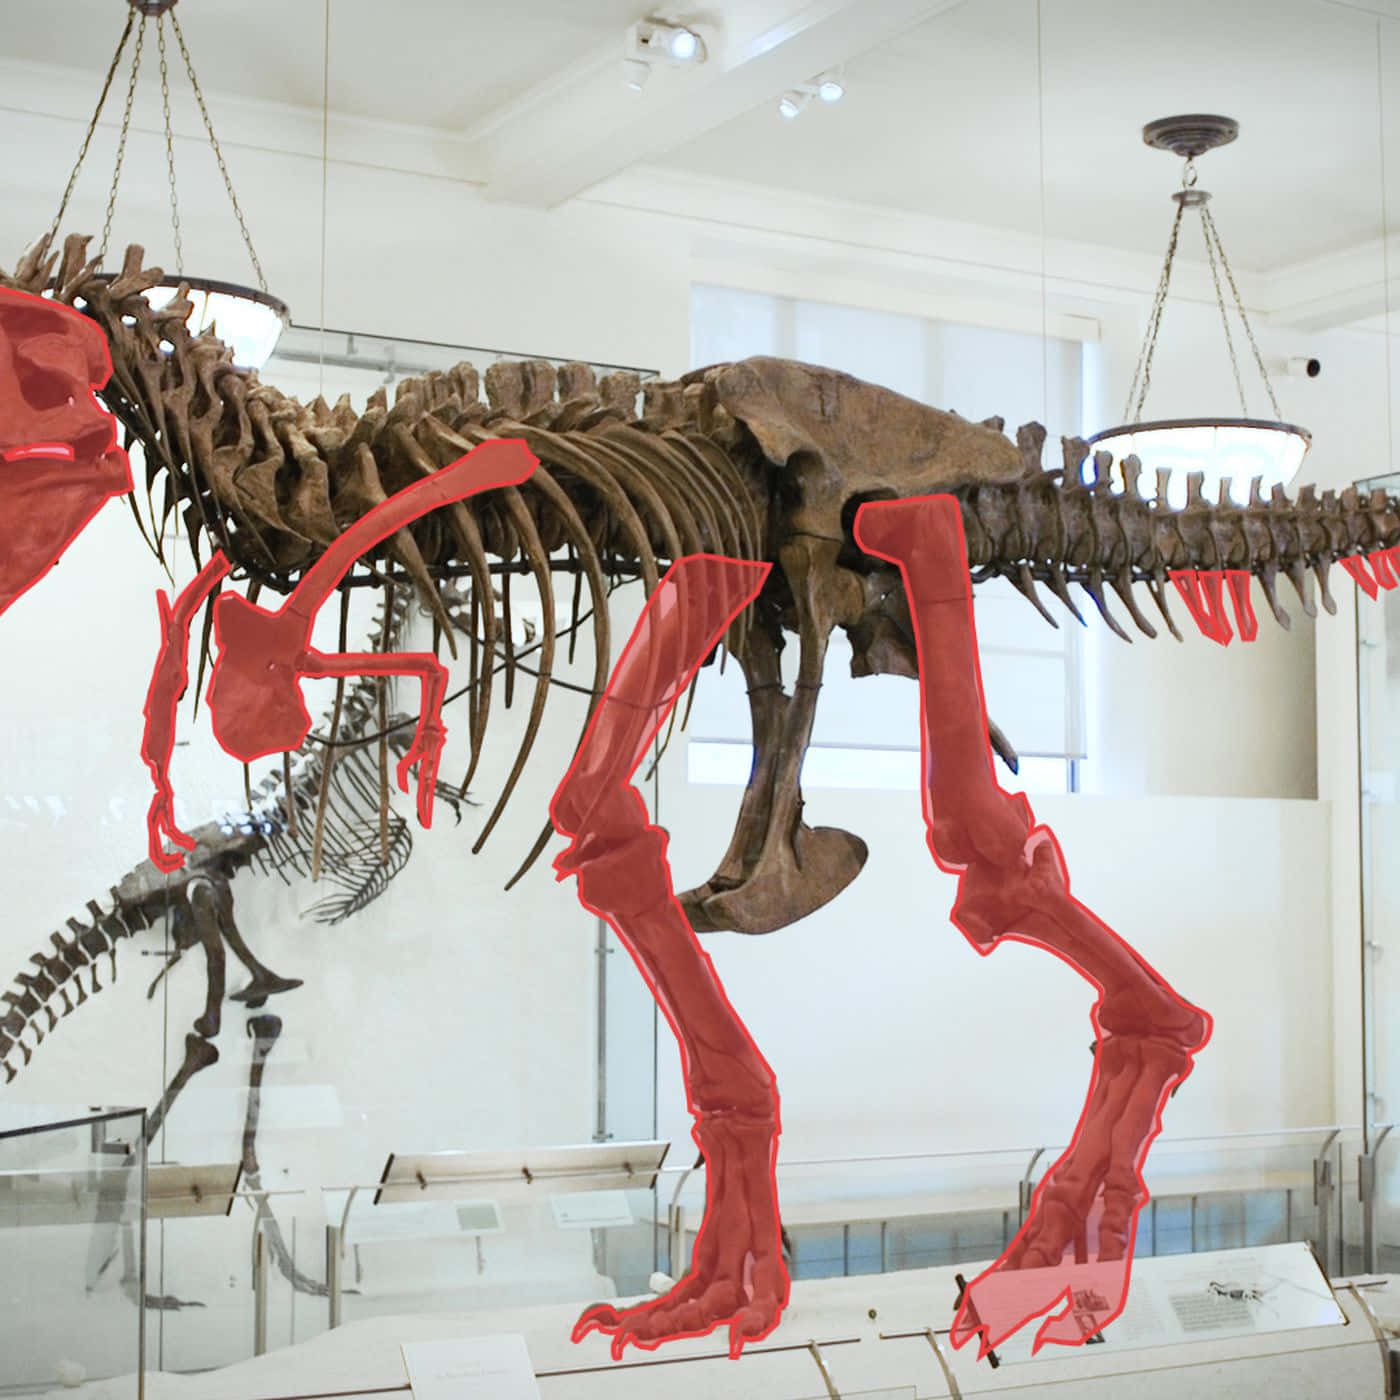 Einskelett Eines T-rex In Einem Museum